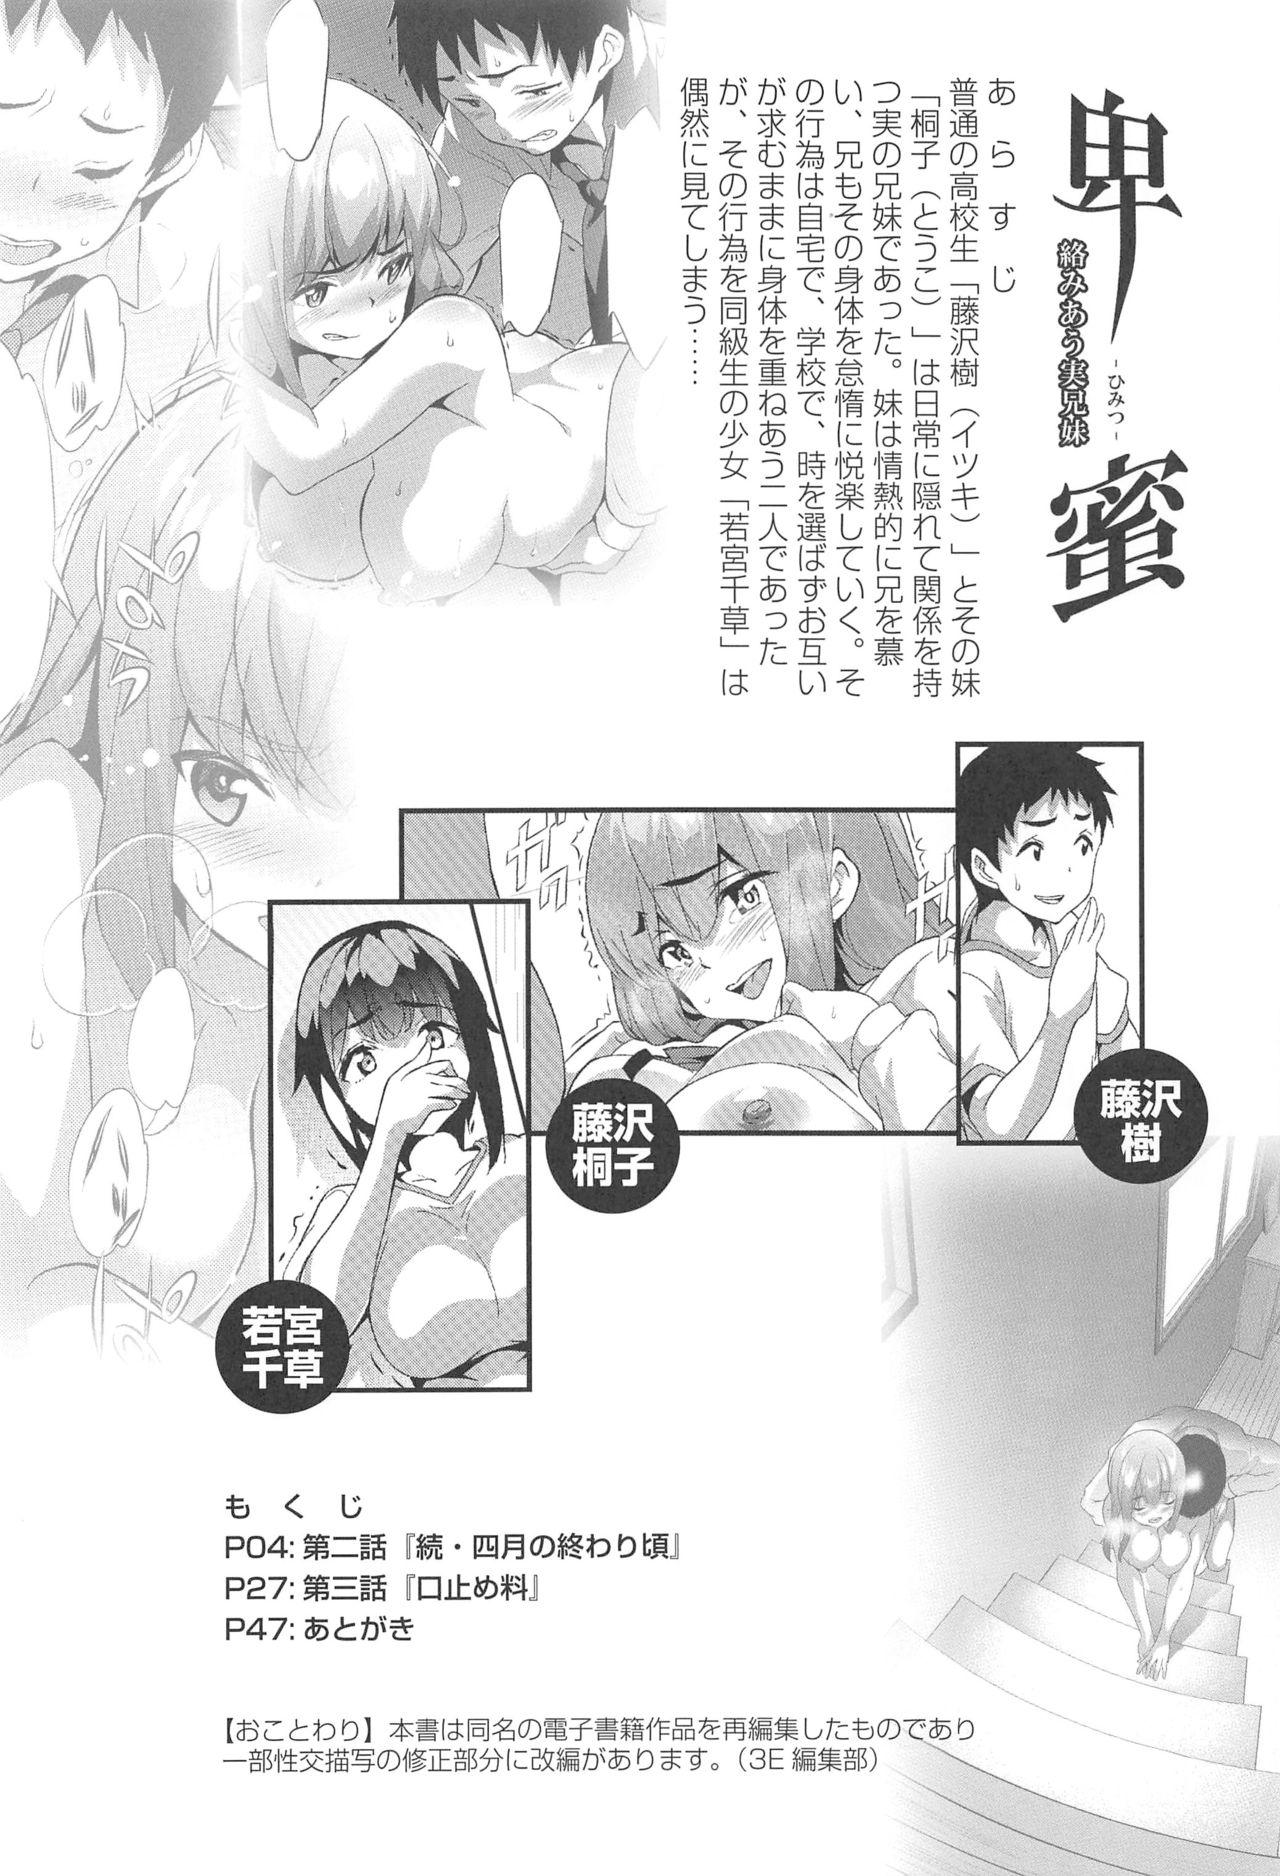 Cutie Himitsu 2 & 3 "Zoku 4-gatsu no Owarigoro" "Kuchidomeryou" - Original Free Amatuer Porn - Page 3